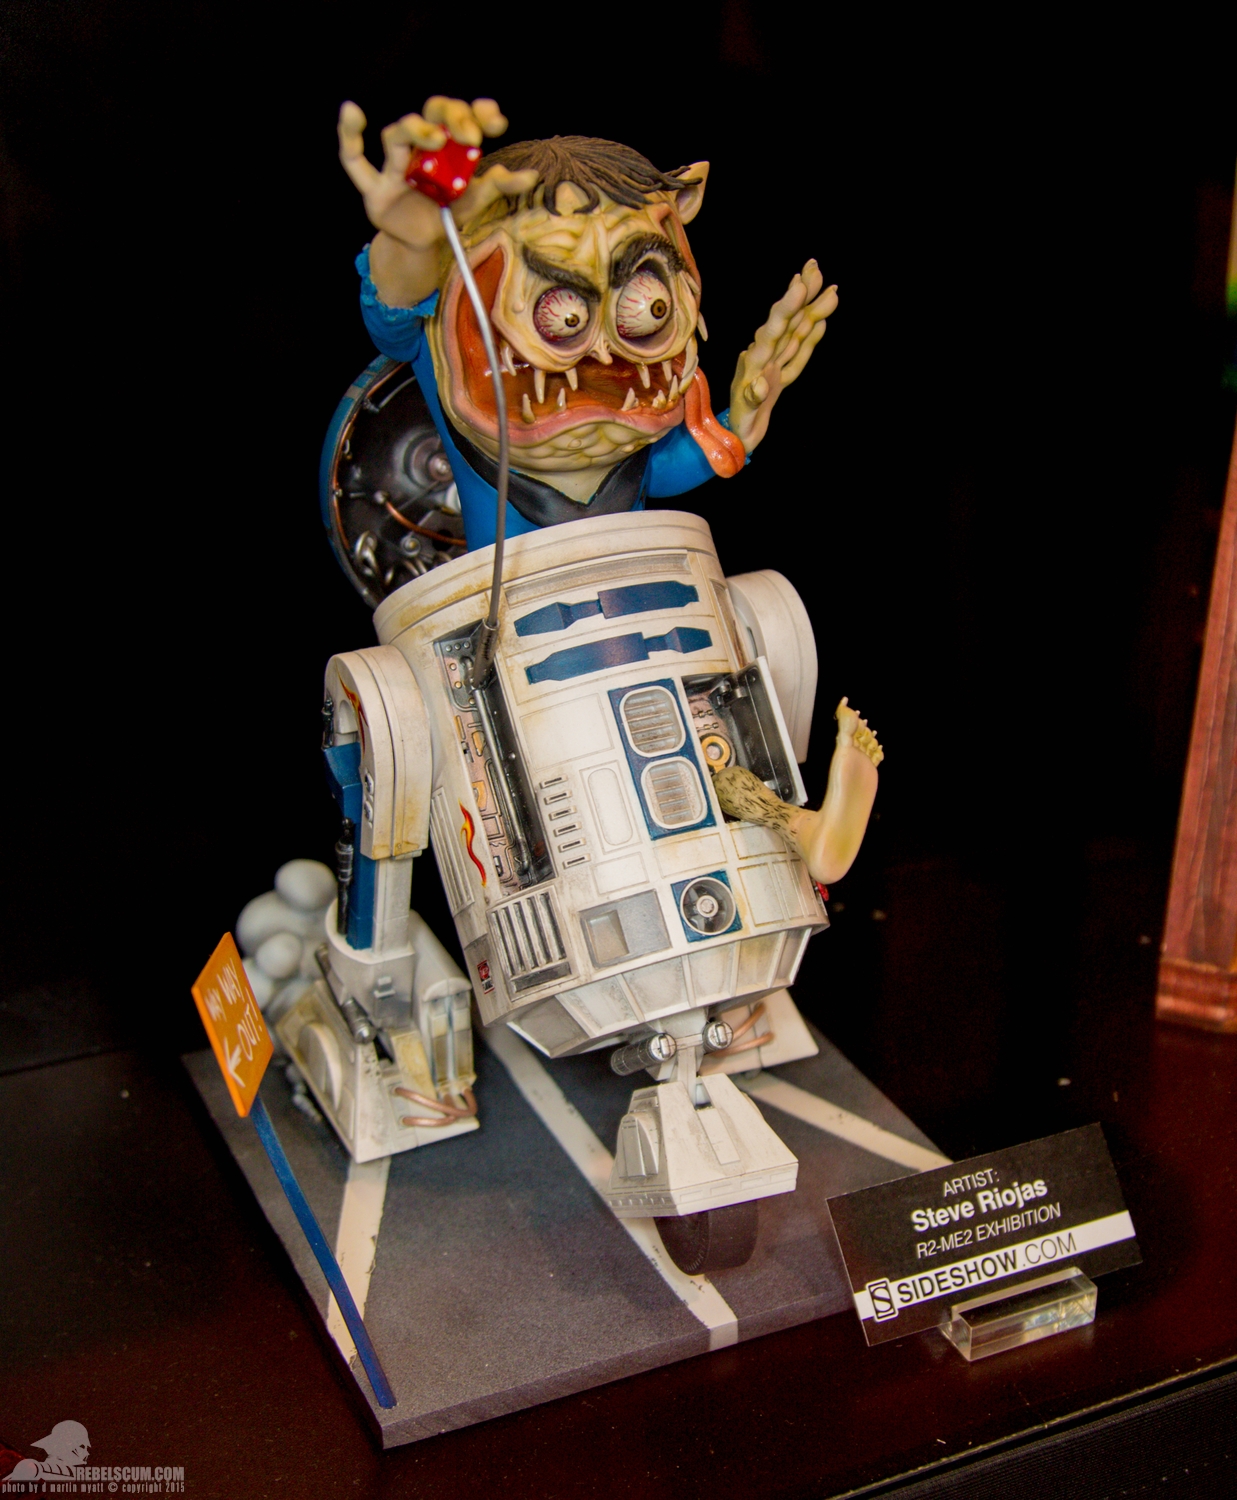 Star-Wars-Celebration-Anaheim-2015-Sideshow-R2-Me2-Exhibit-007.jpg